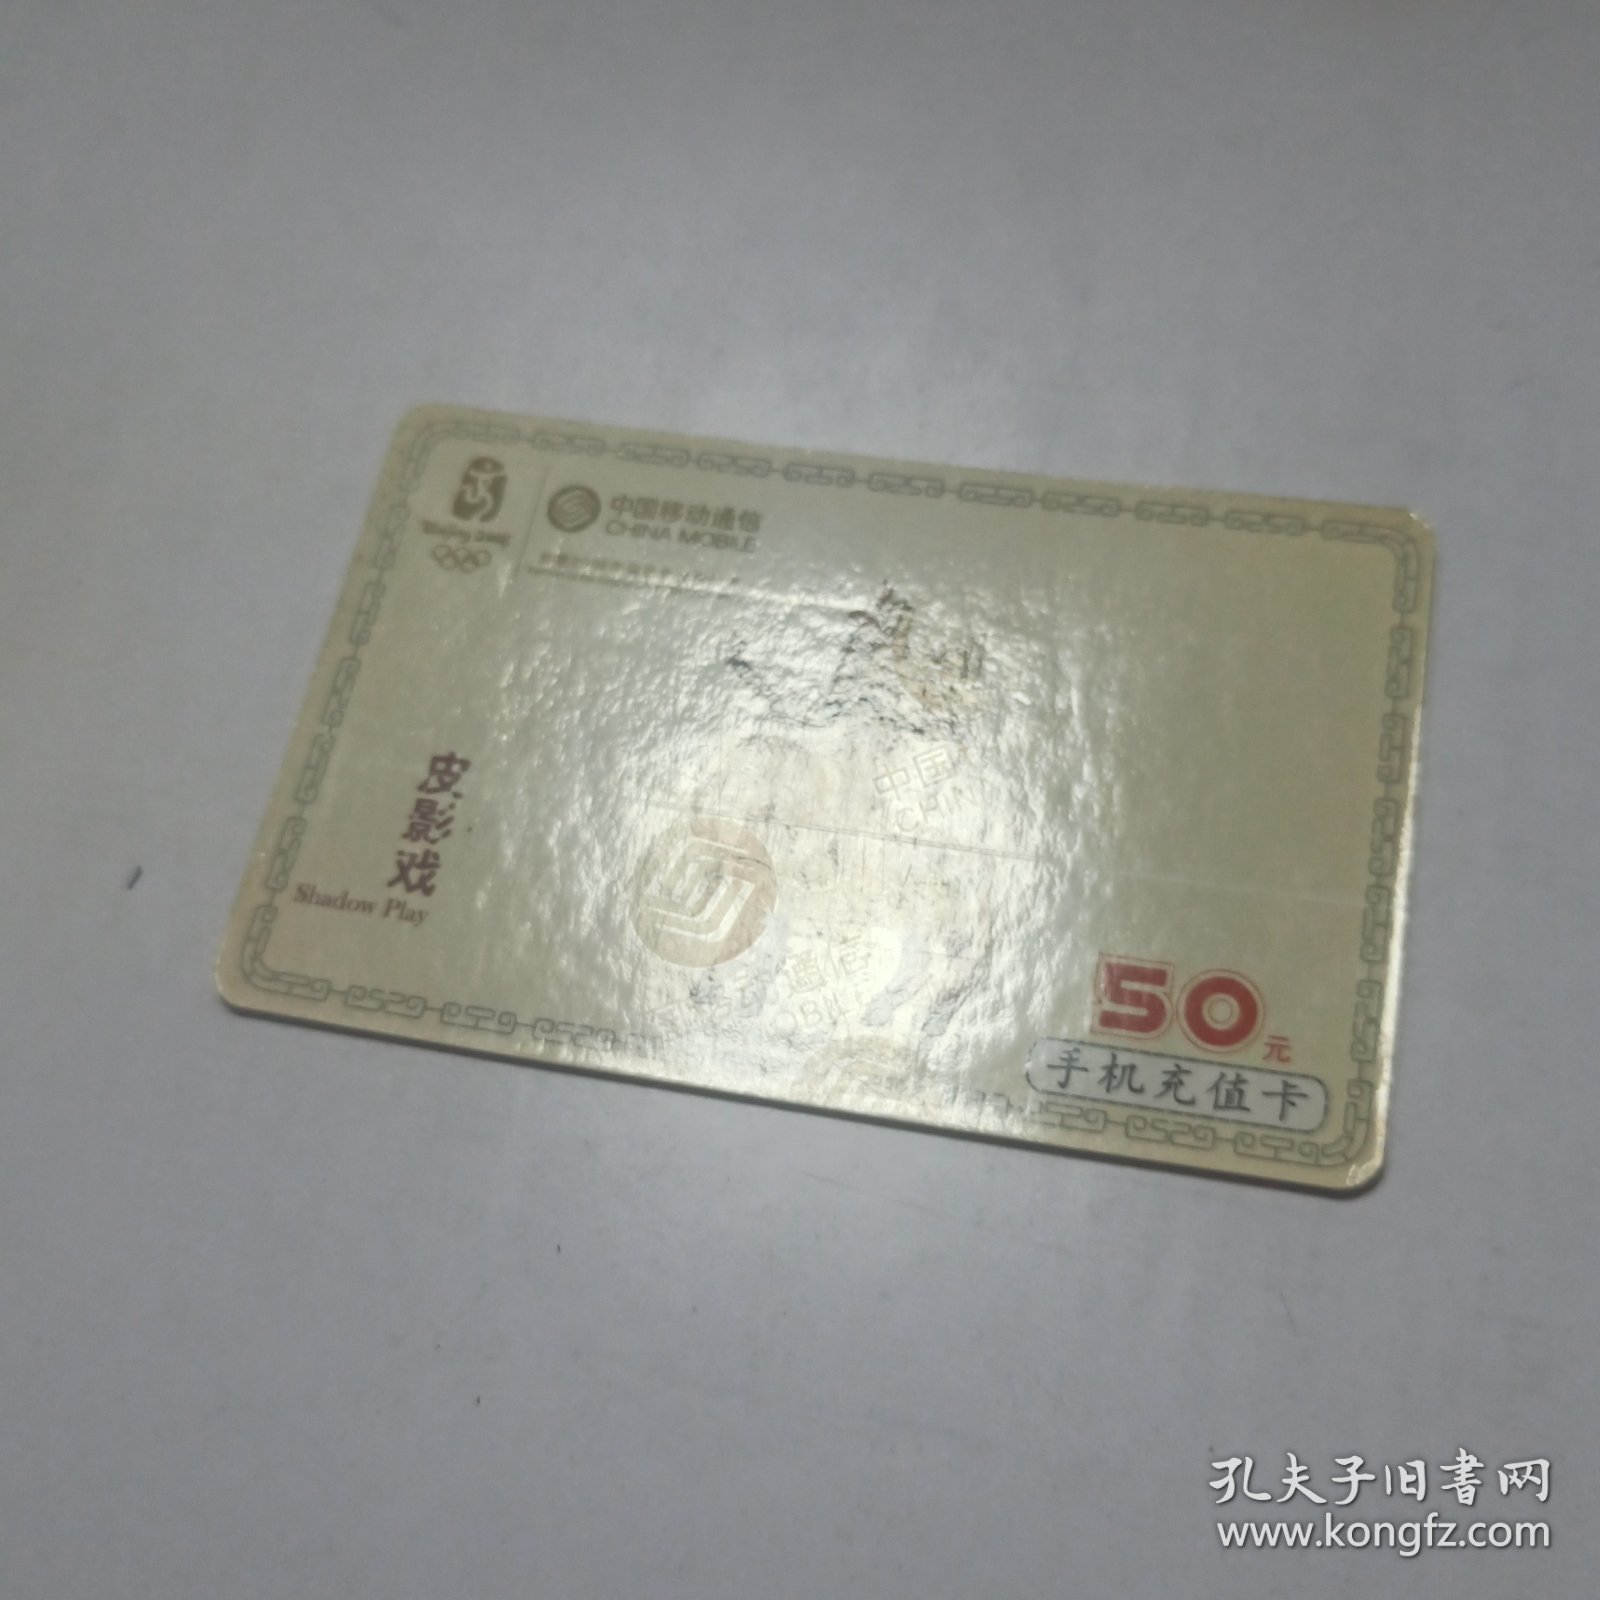 中国移动通信手机充值卡面值50元 “皮影戏”CM-MCZ-2007-5（5-2） 已使用过，仅供收藏